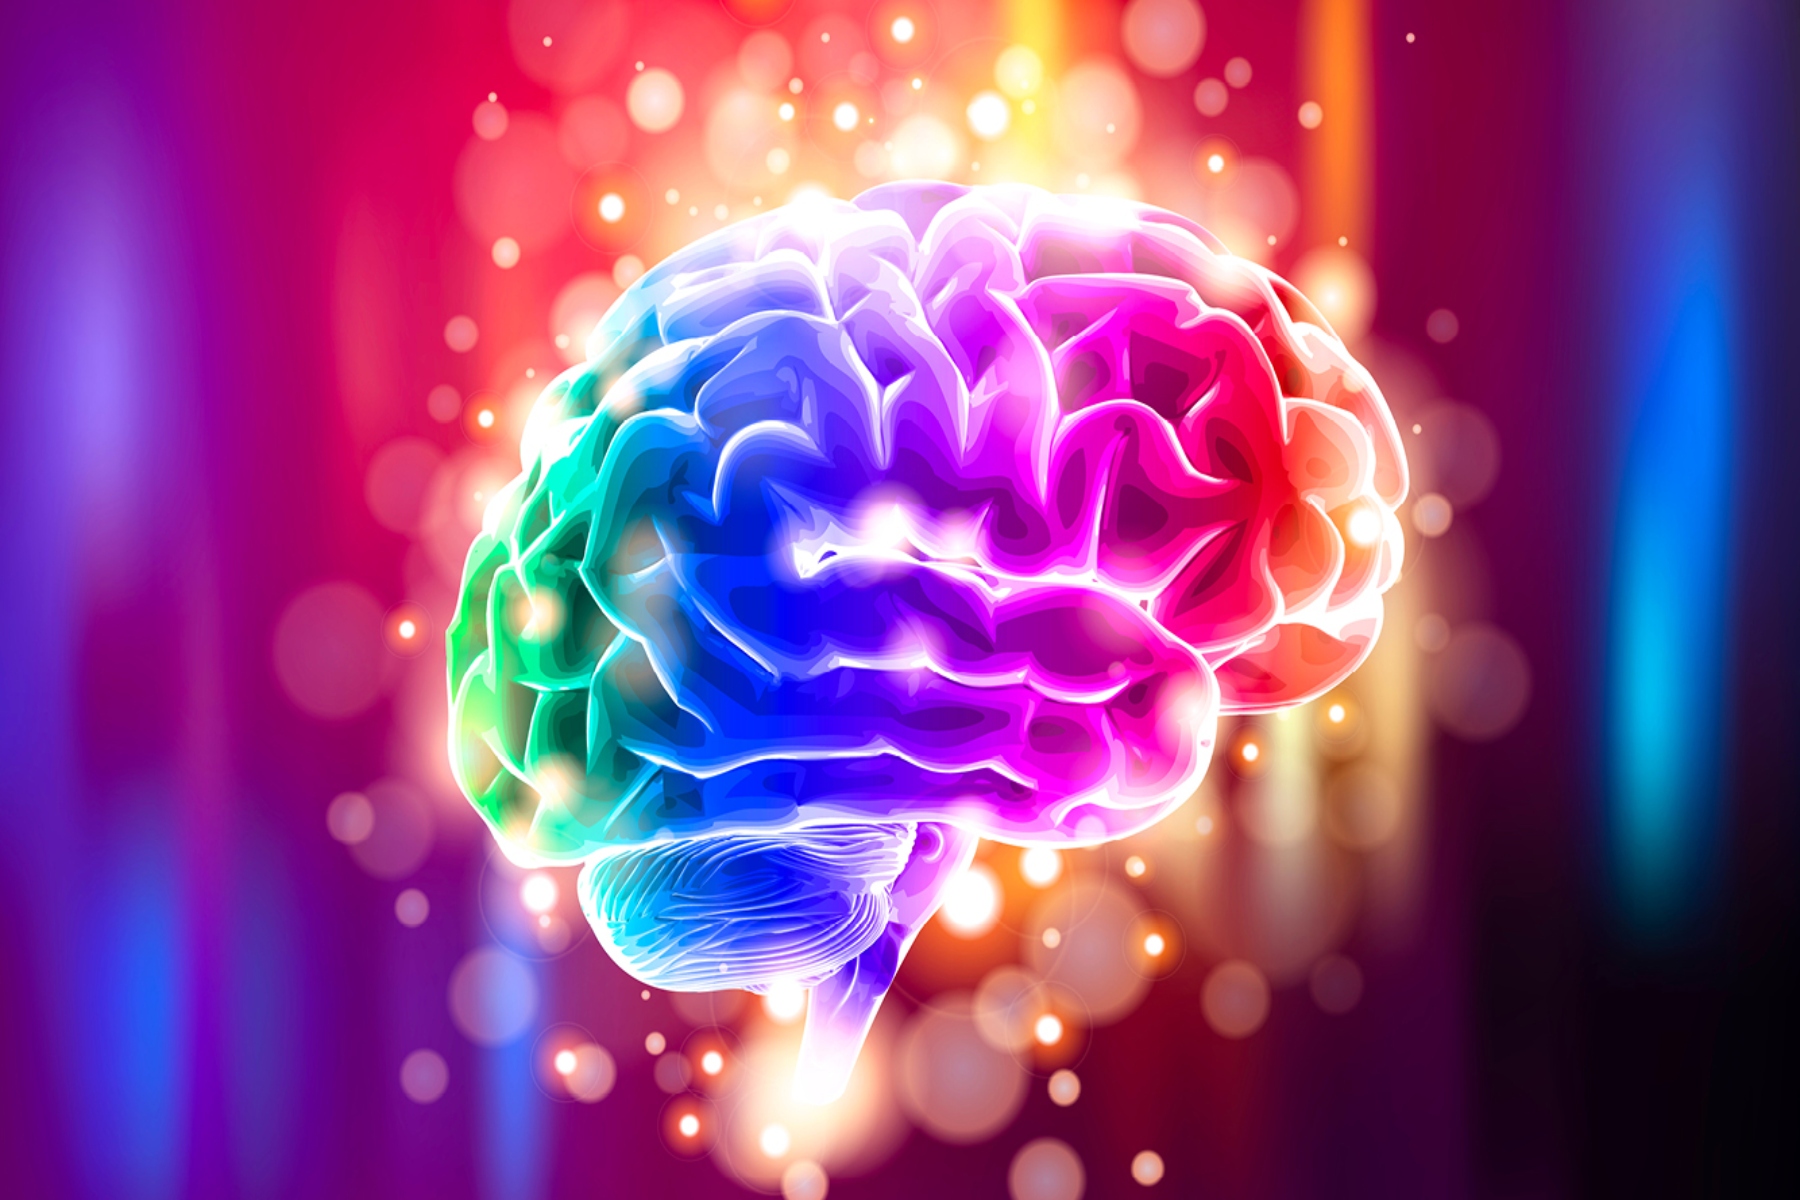 Εγκέφαλος μουσική: Οι νευρώνες του εγκεφάλου αντιδρούν σε συγκεκριμένα τραγούδια